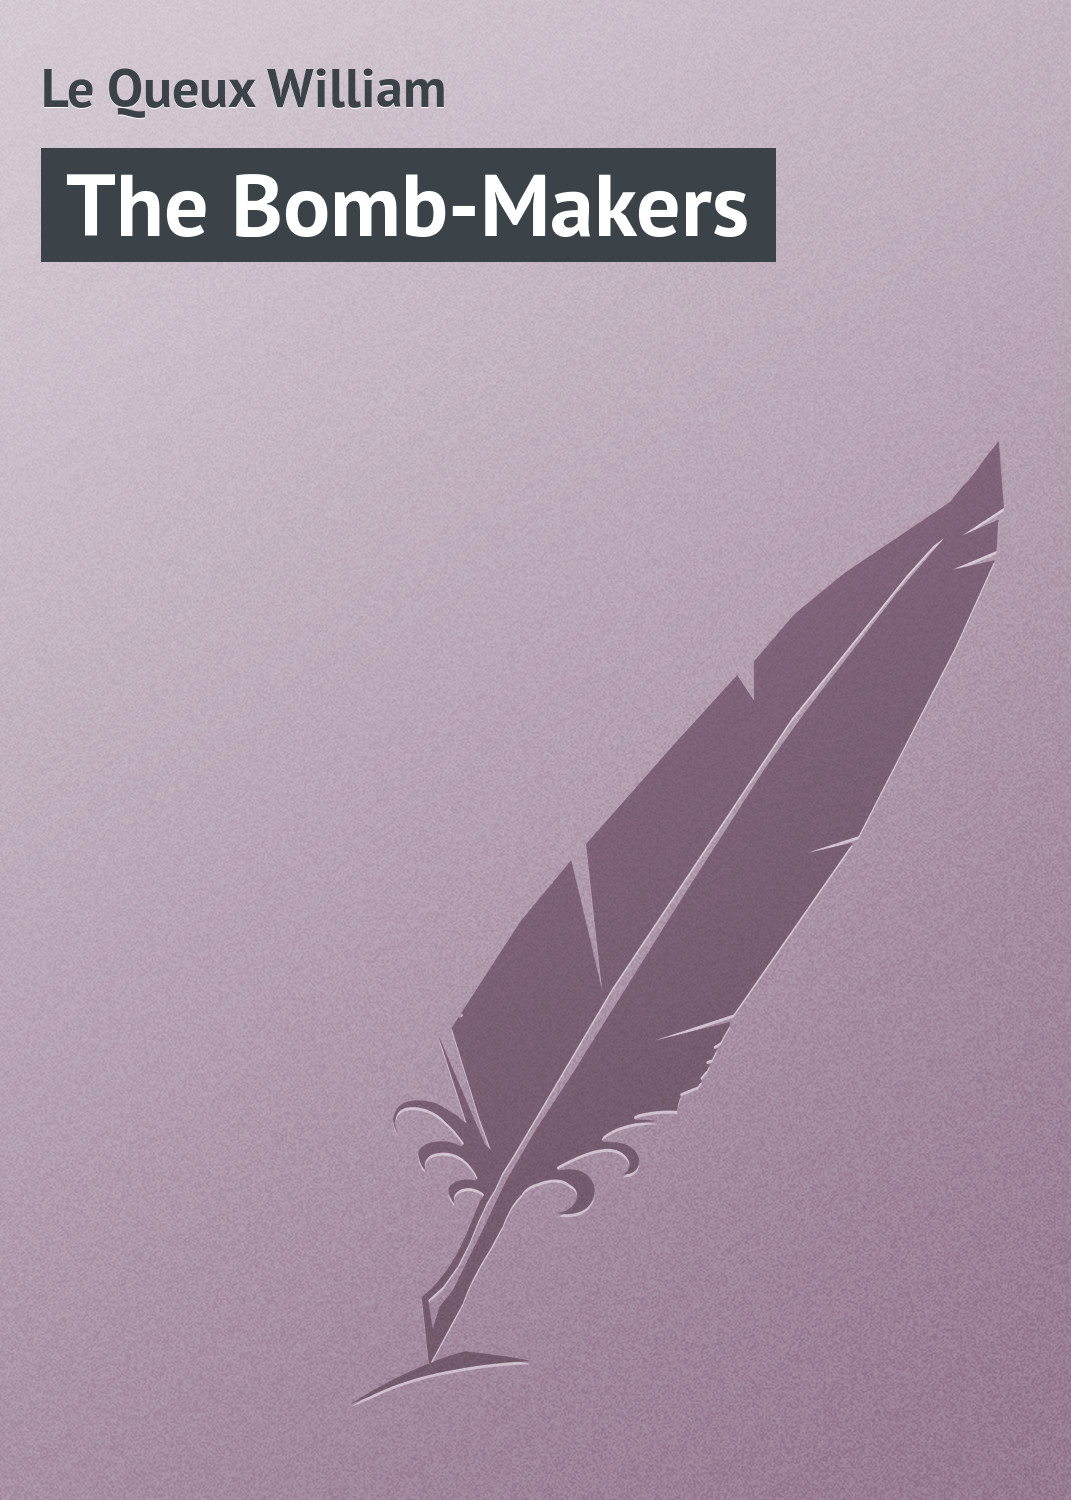 Книга The Bomb-Makers из серии , созданная William Le Queux, может относится к жанру Иностранные языки, Зарубежная классика. Стоимость электронной книги The Bomb-Makers с идентификатором 23156979 составляет 5.99 руб.